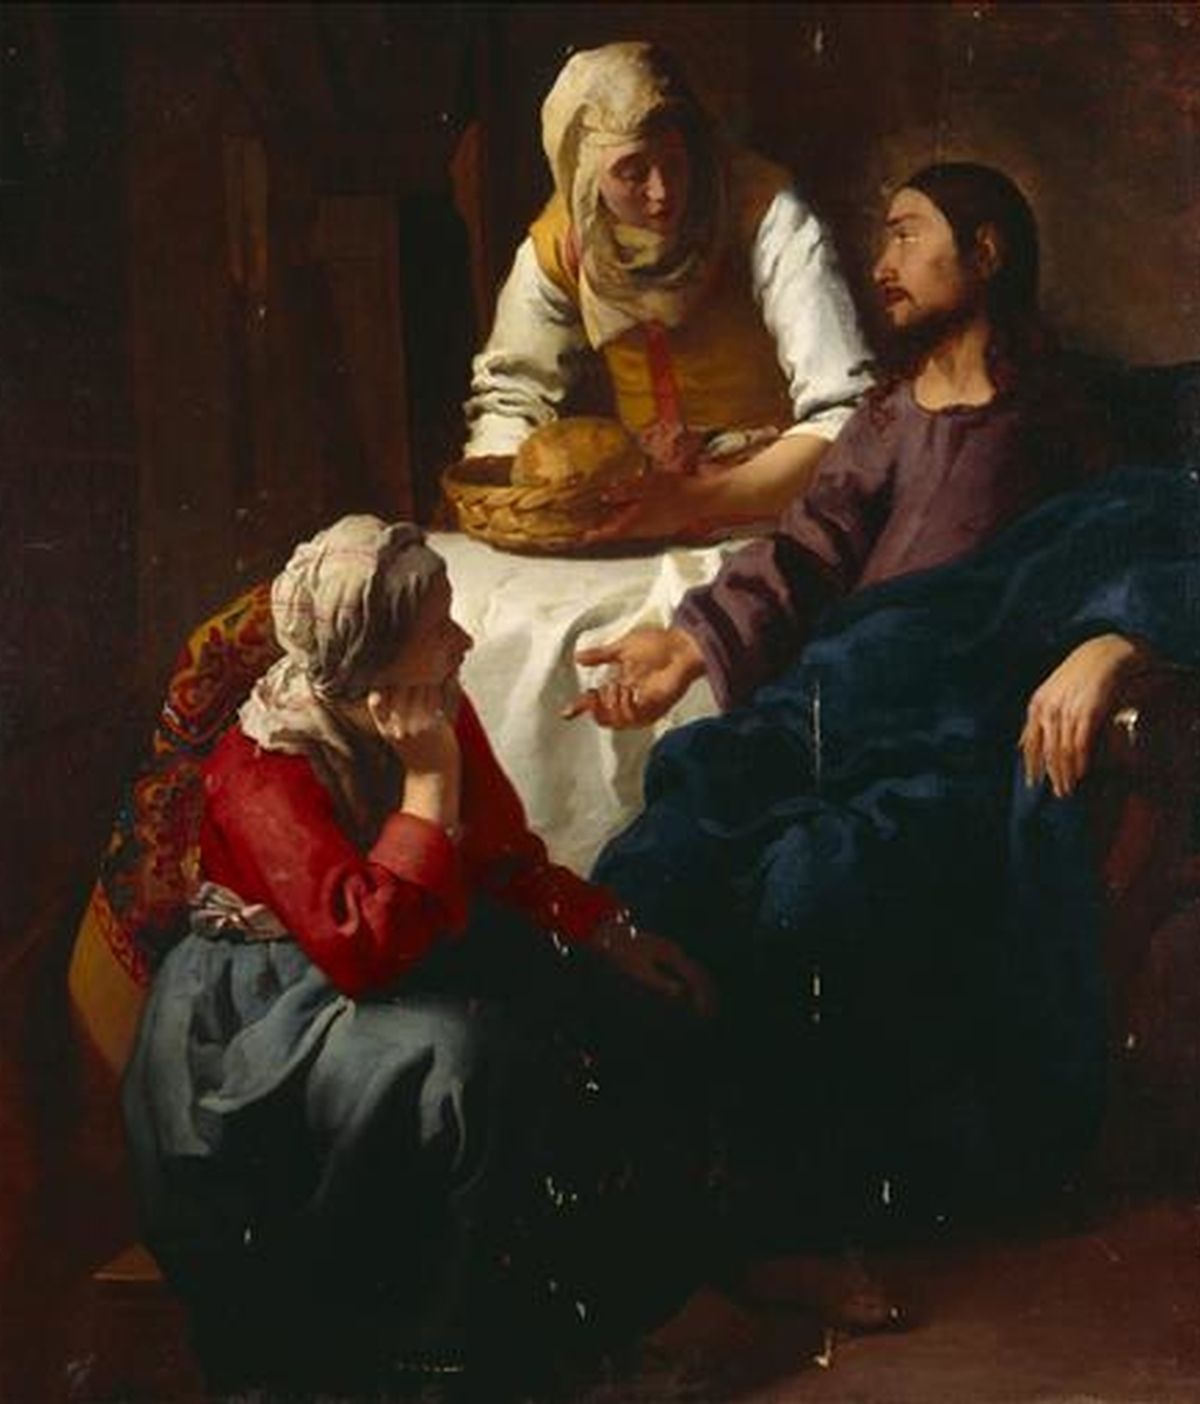 Fotografía facilitada por la Galería Nacional de Escocia de "Cristo en casa de Marta y María", una de las tres obras tempranas del pintor holandés Johannes Vermeer (1632-1675) que se exhibirán del 8 de diciembre al 12 de marzo en la Galería Nacional de Escocia, en Edimburgo. EFE